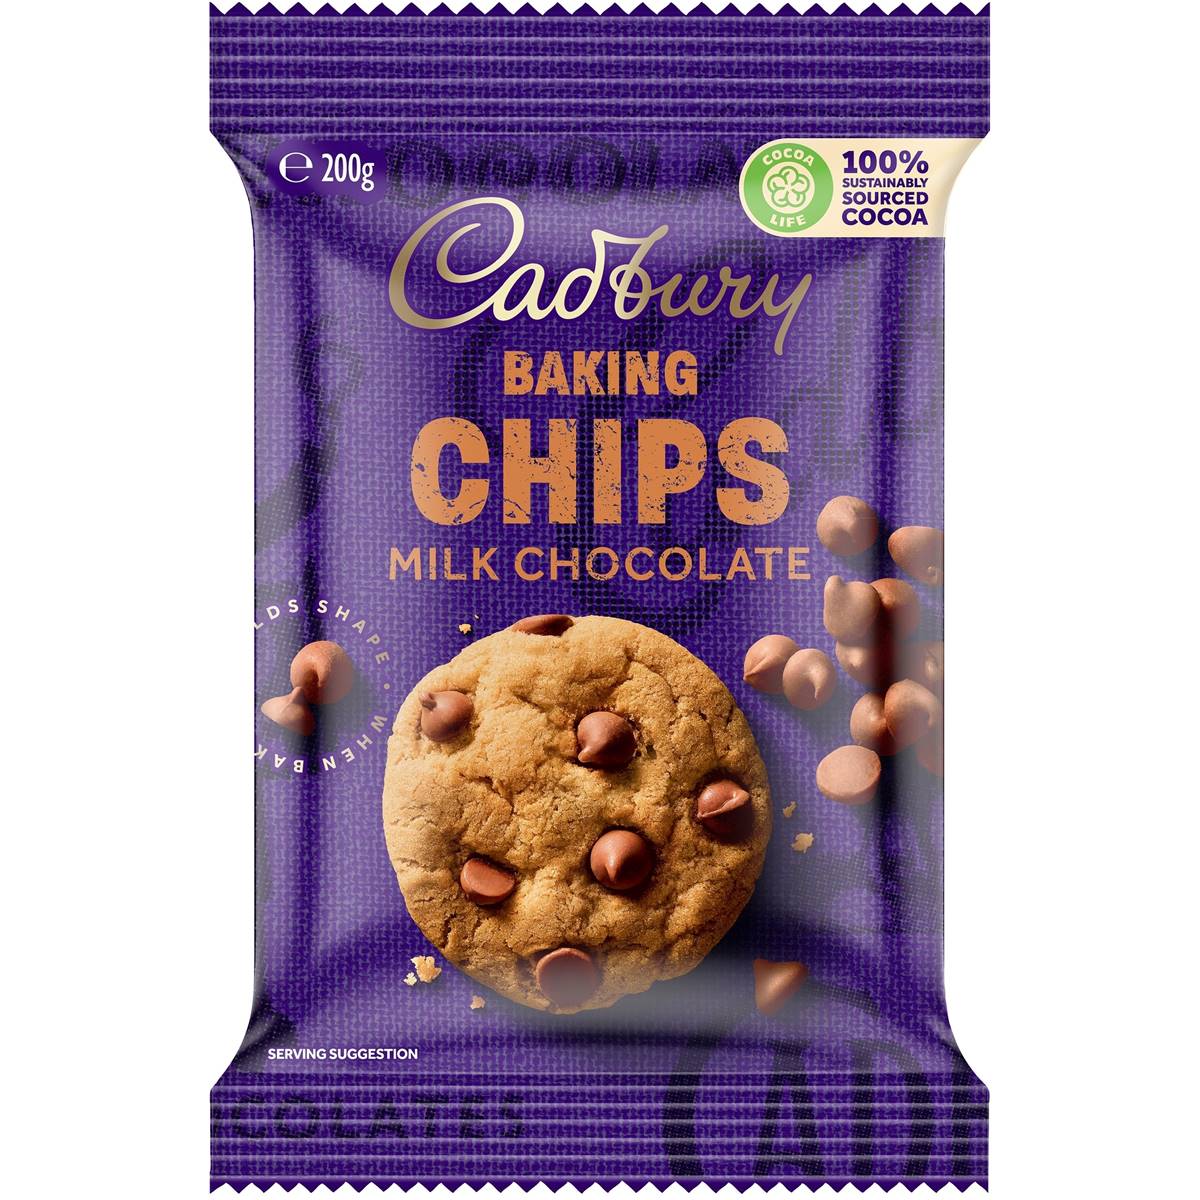 Cadbury Baking Chips Milk Chocolate 200g